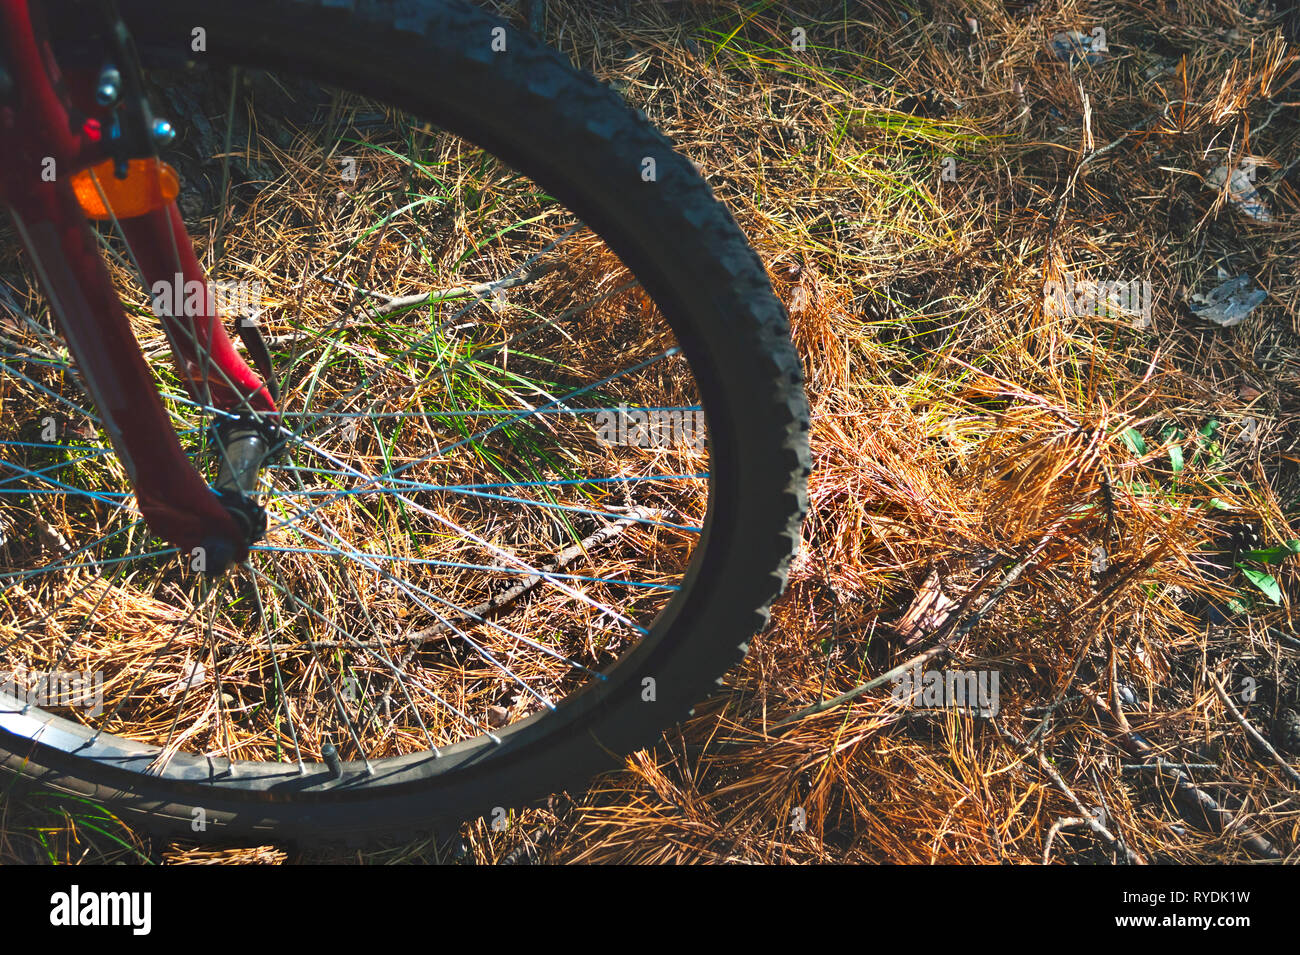 Rad eines Red Mountain bike, Fahrrad, auf den Boden mit Piniennadeln, Gras und Blätter. Abenteuer, Radfahren, Sport Konzept. Stockfoto